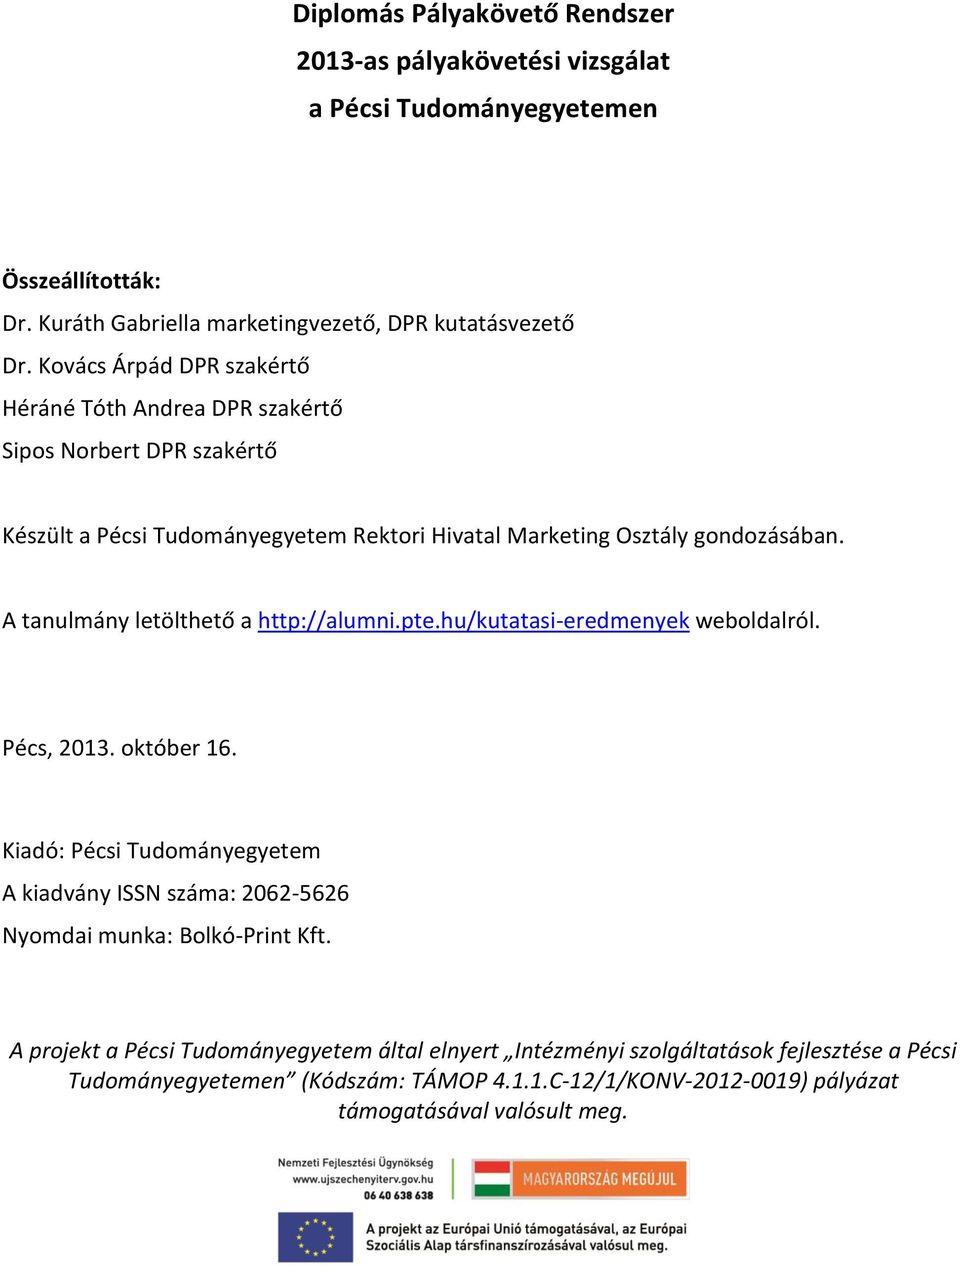 A tanulmány letölthető a http://alumni.pte.hu/kutatasi-eredmenyek weboldalról. Pécs, 2013. október 16.